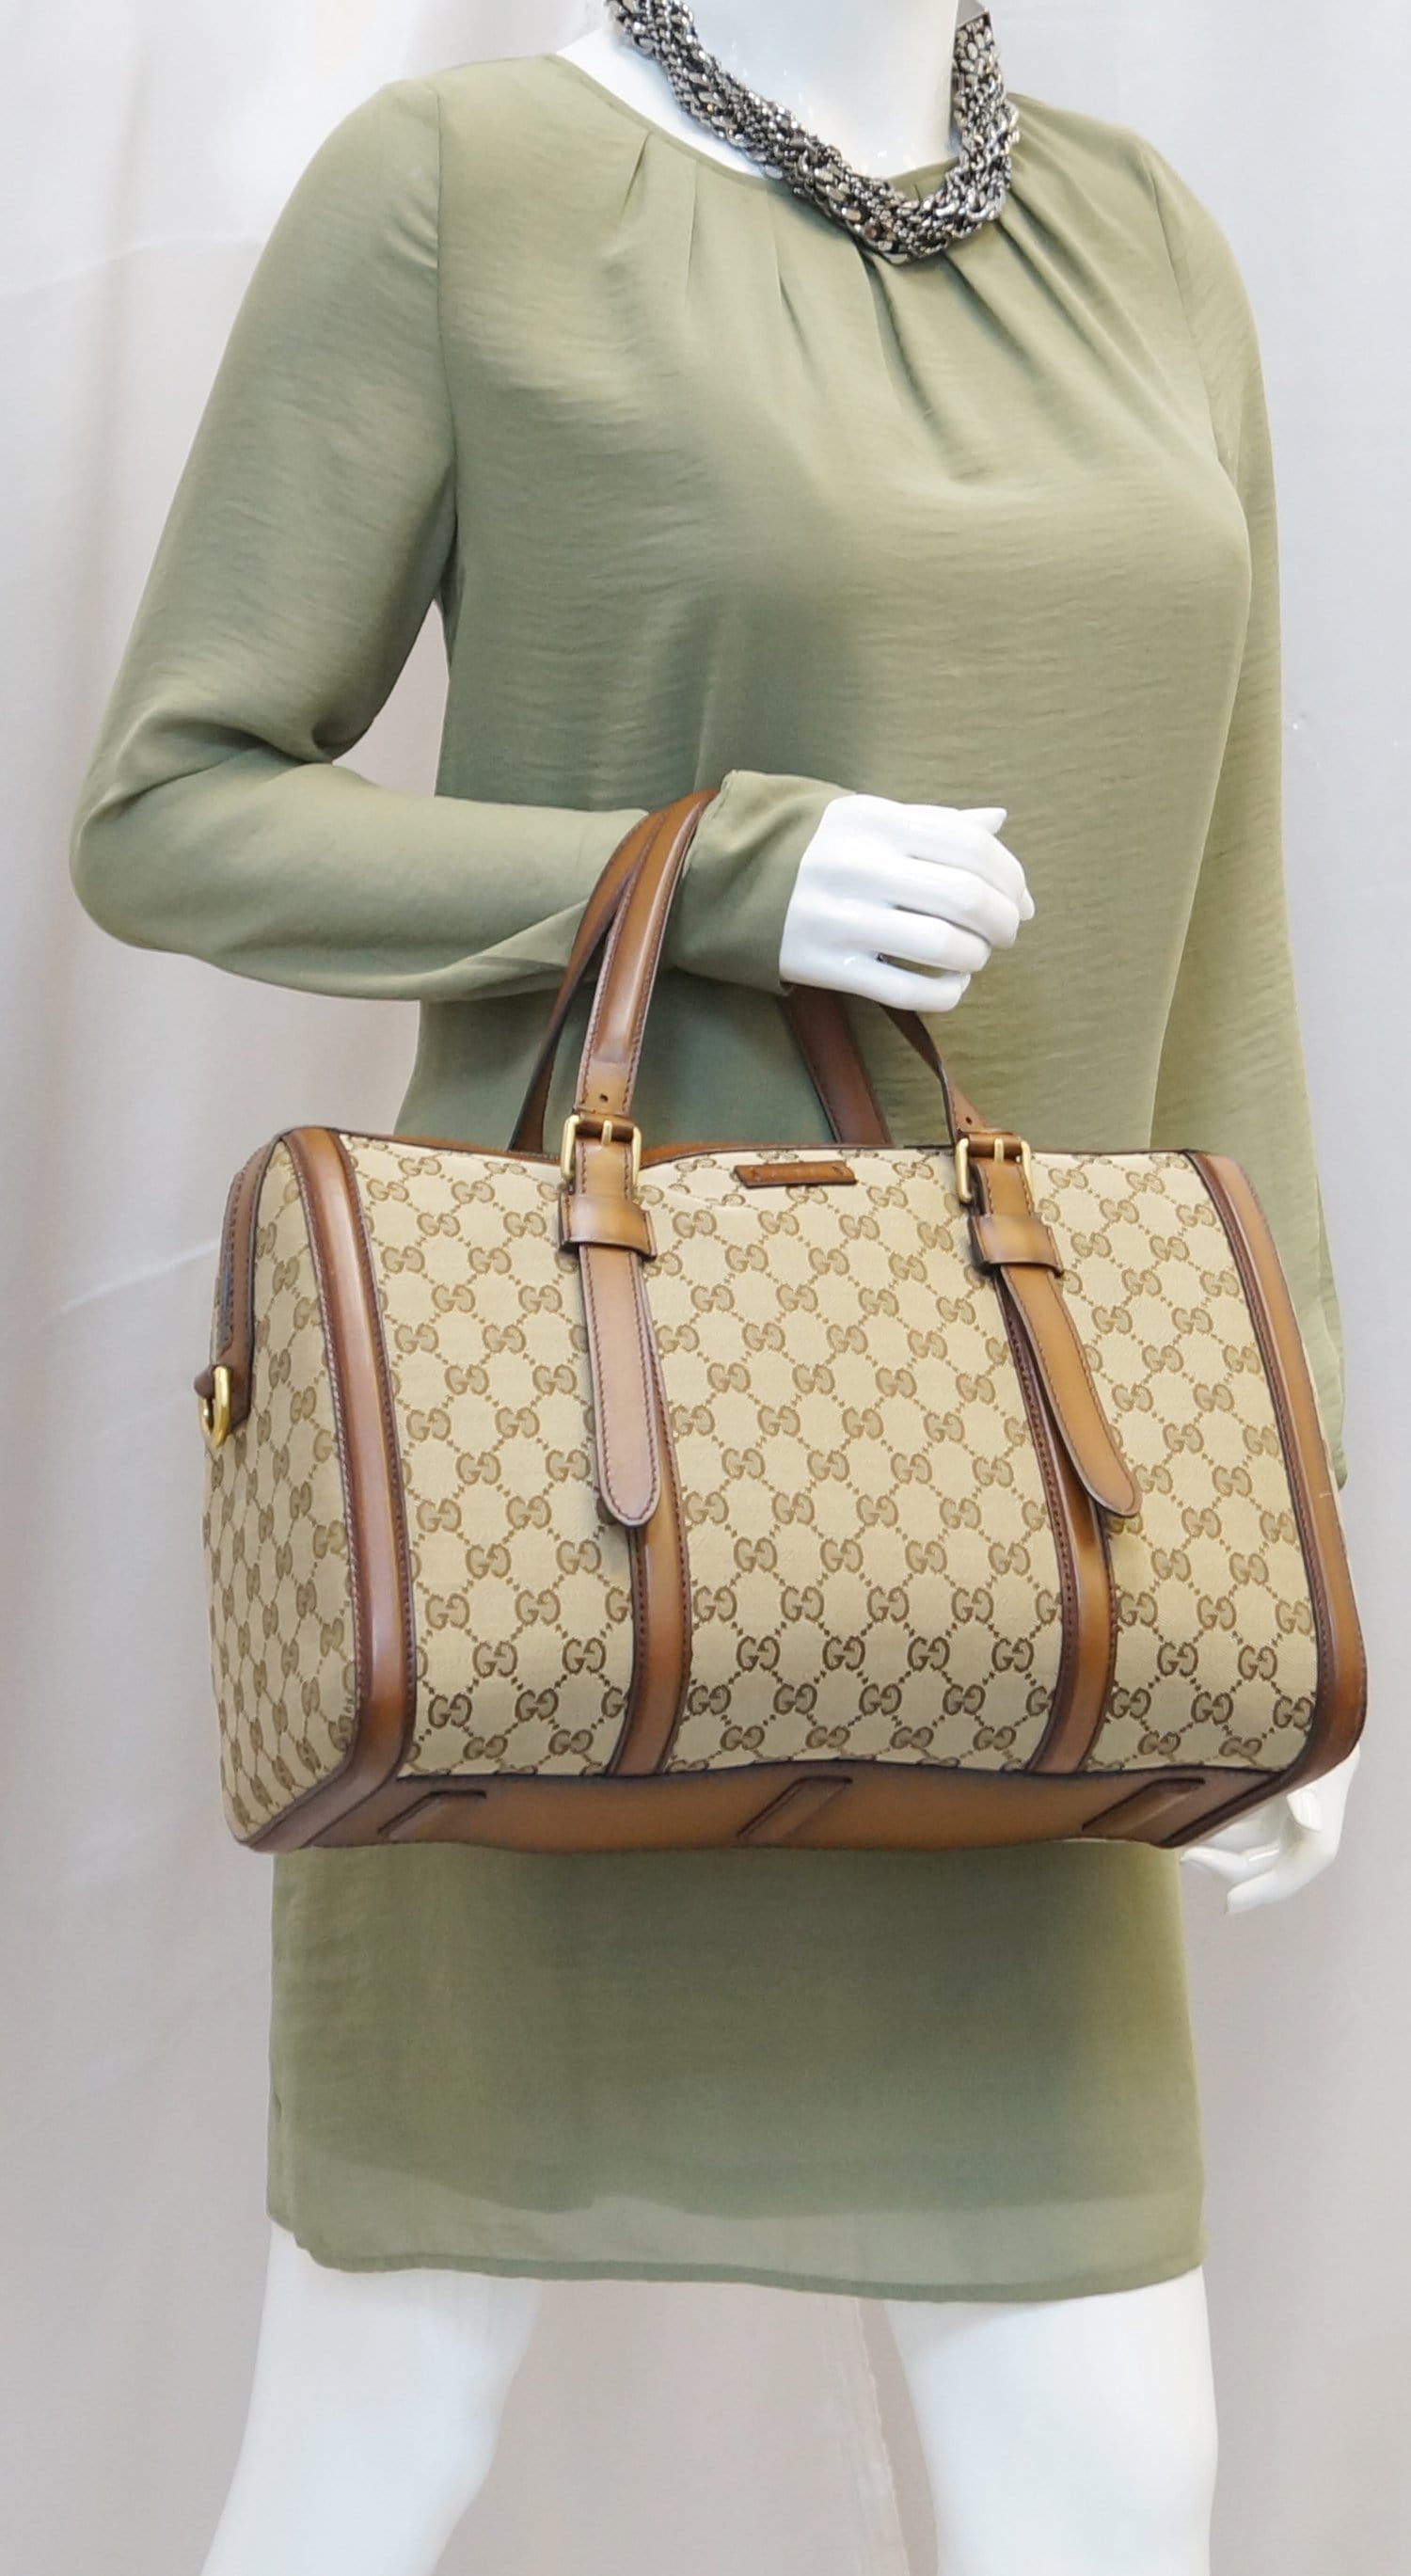 Dillard's Designer shoes and handbags #kurtgeiger #louisvuittonbag #gucci 